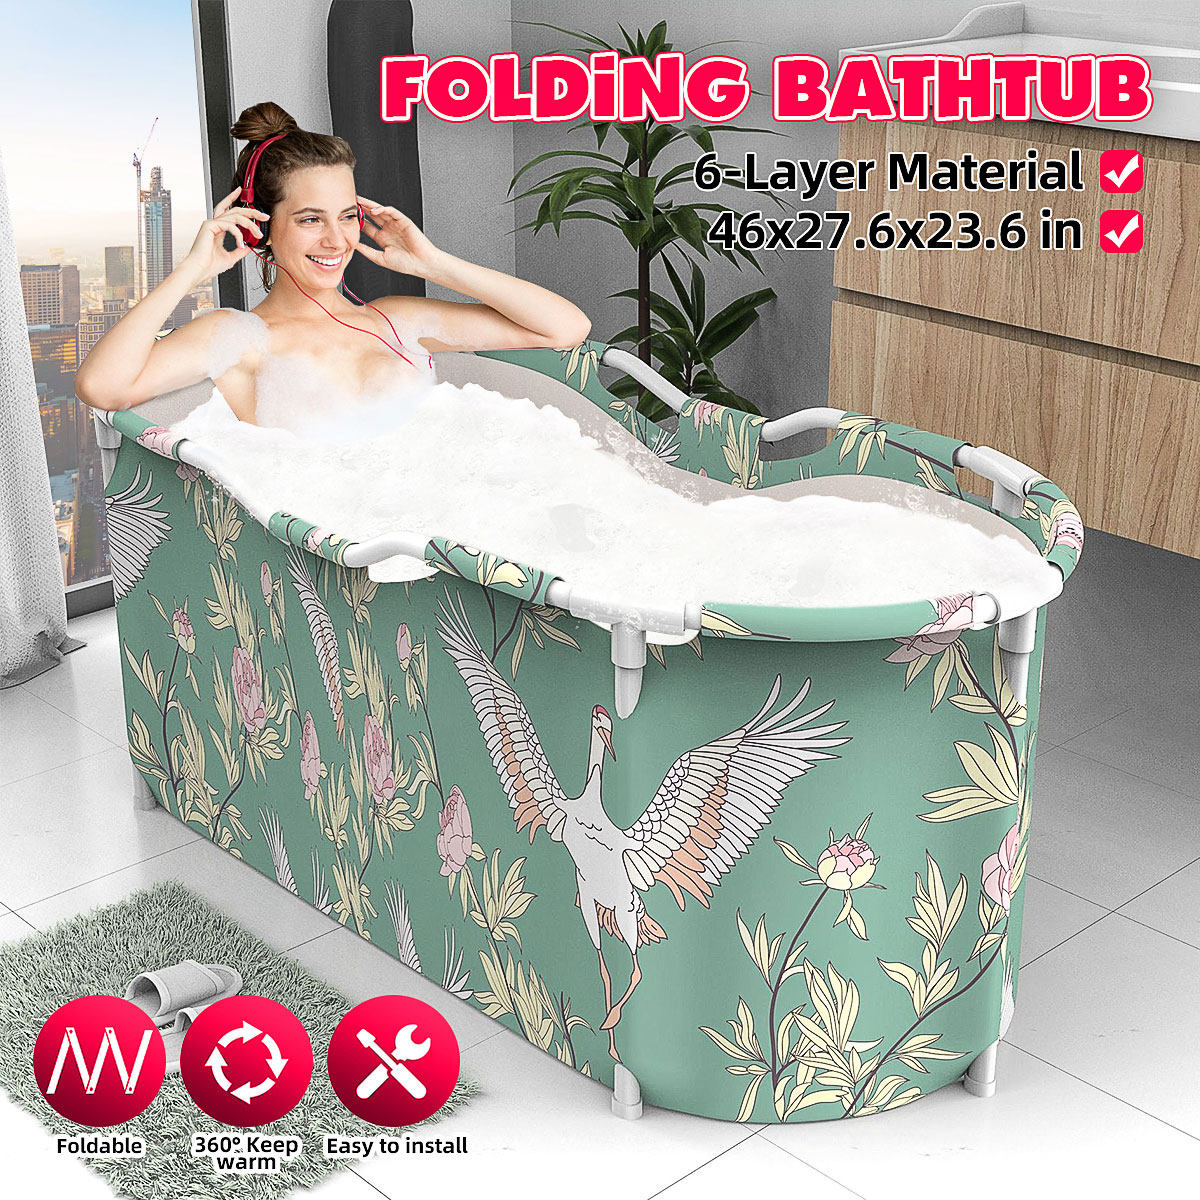 46x27.6x23.6 inch Portable Bathtub Folding Water Tub Indoor Outdoor Room Adult Spa Foldable Bath Bucket 4